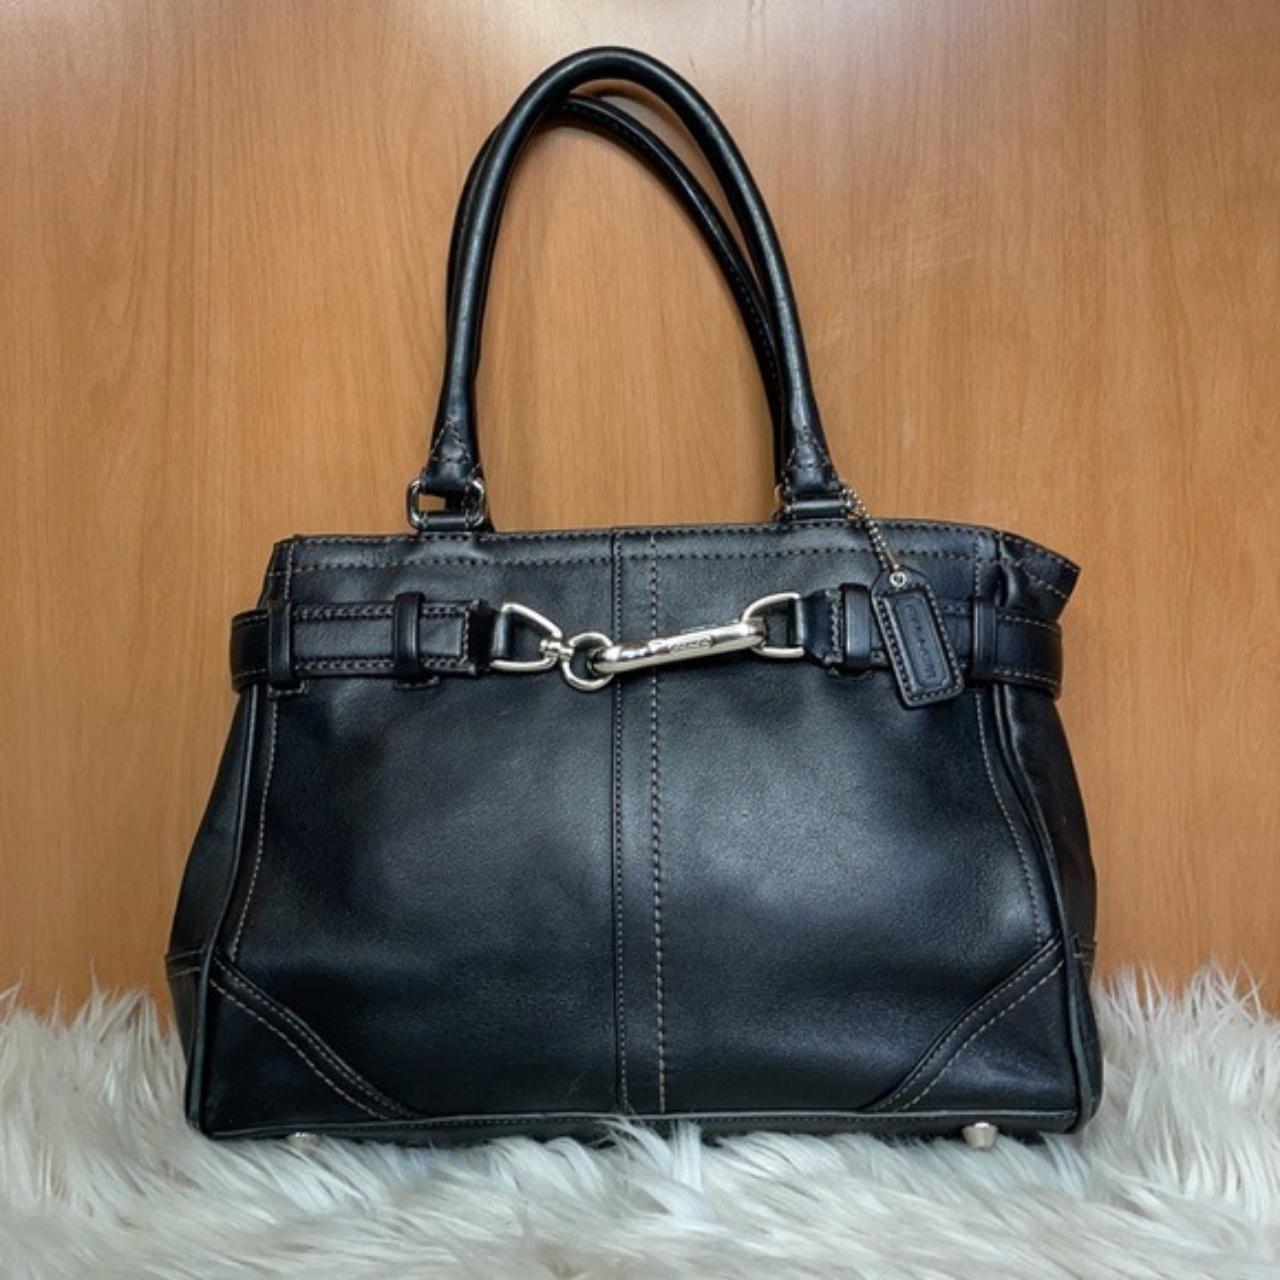 Black leather shoulder bag with silver hard wear and... - Depop